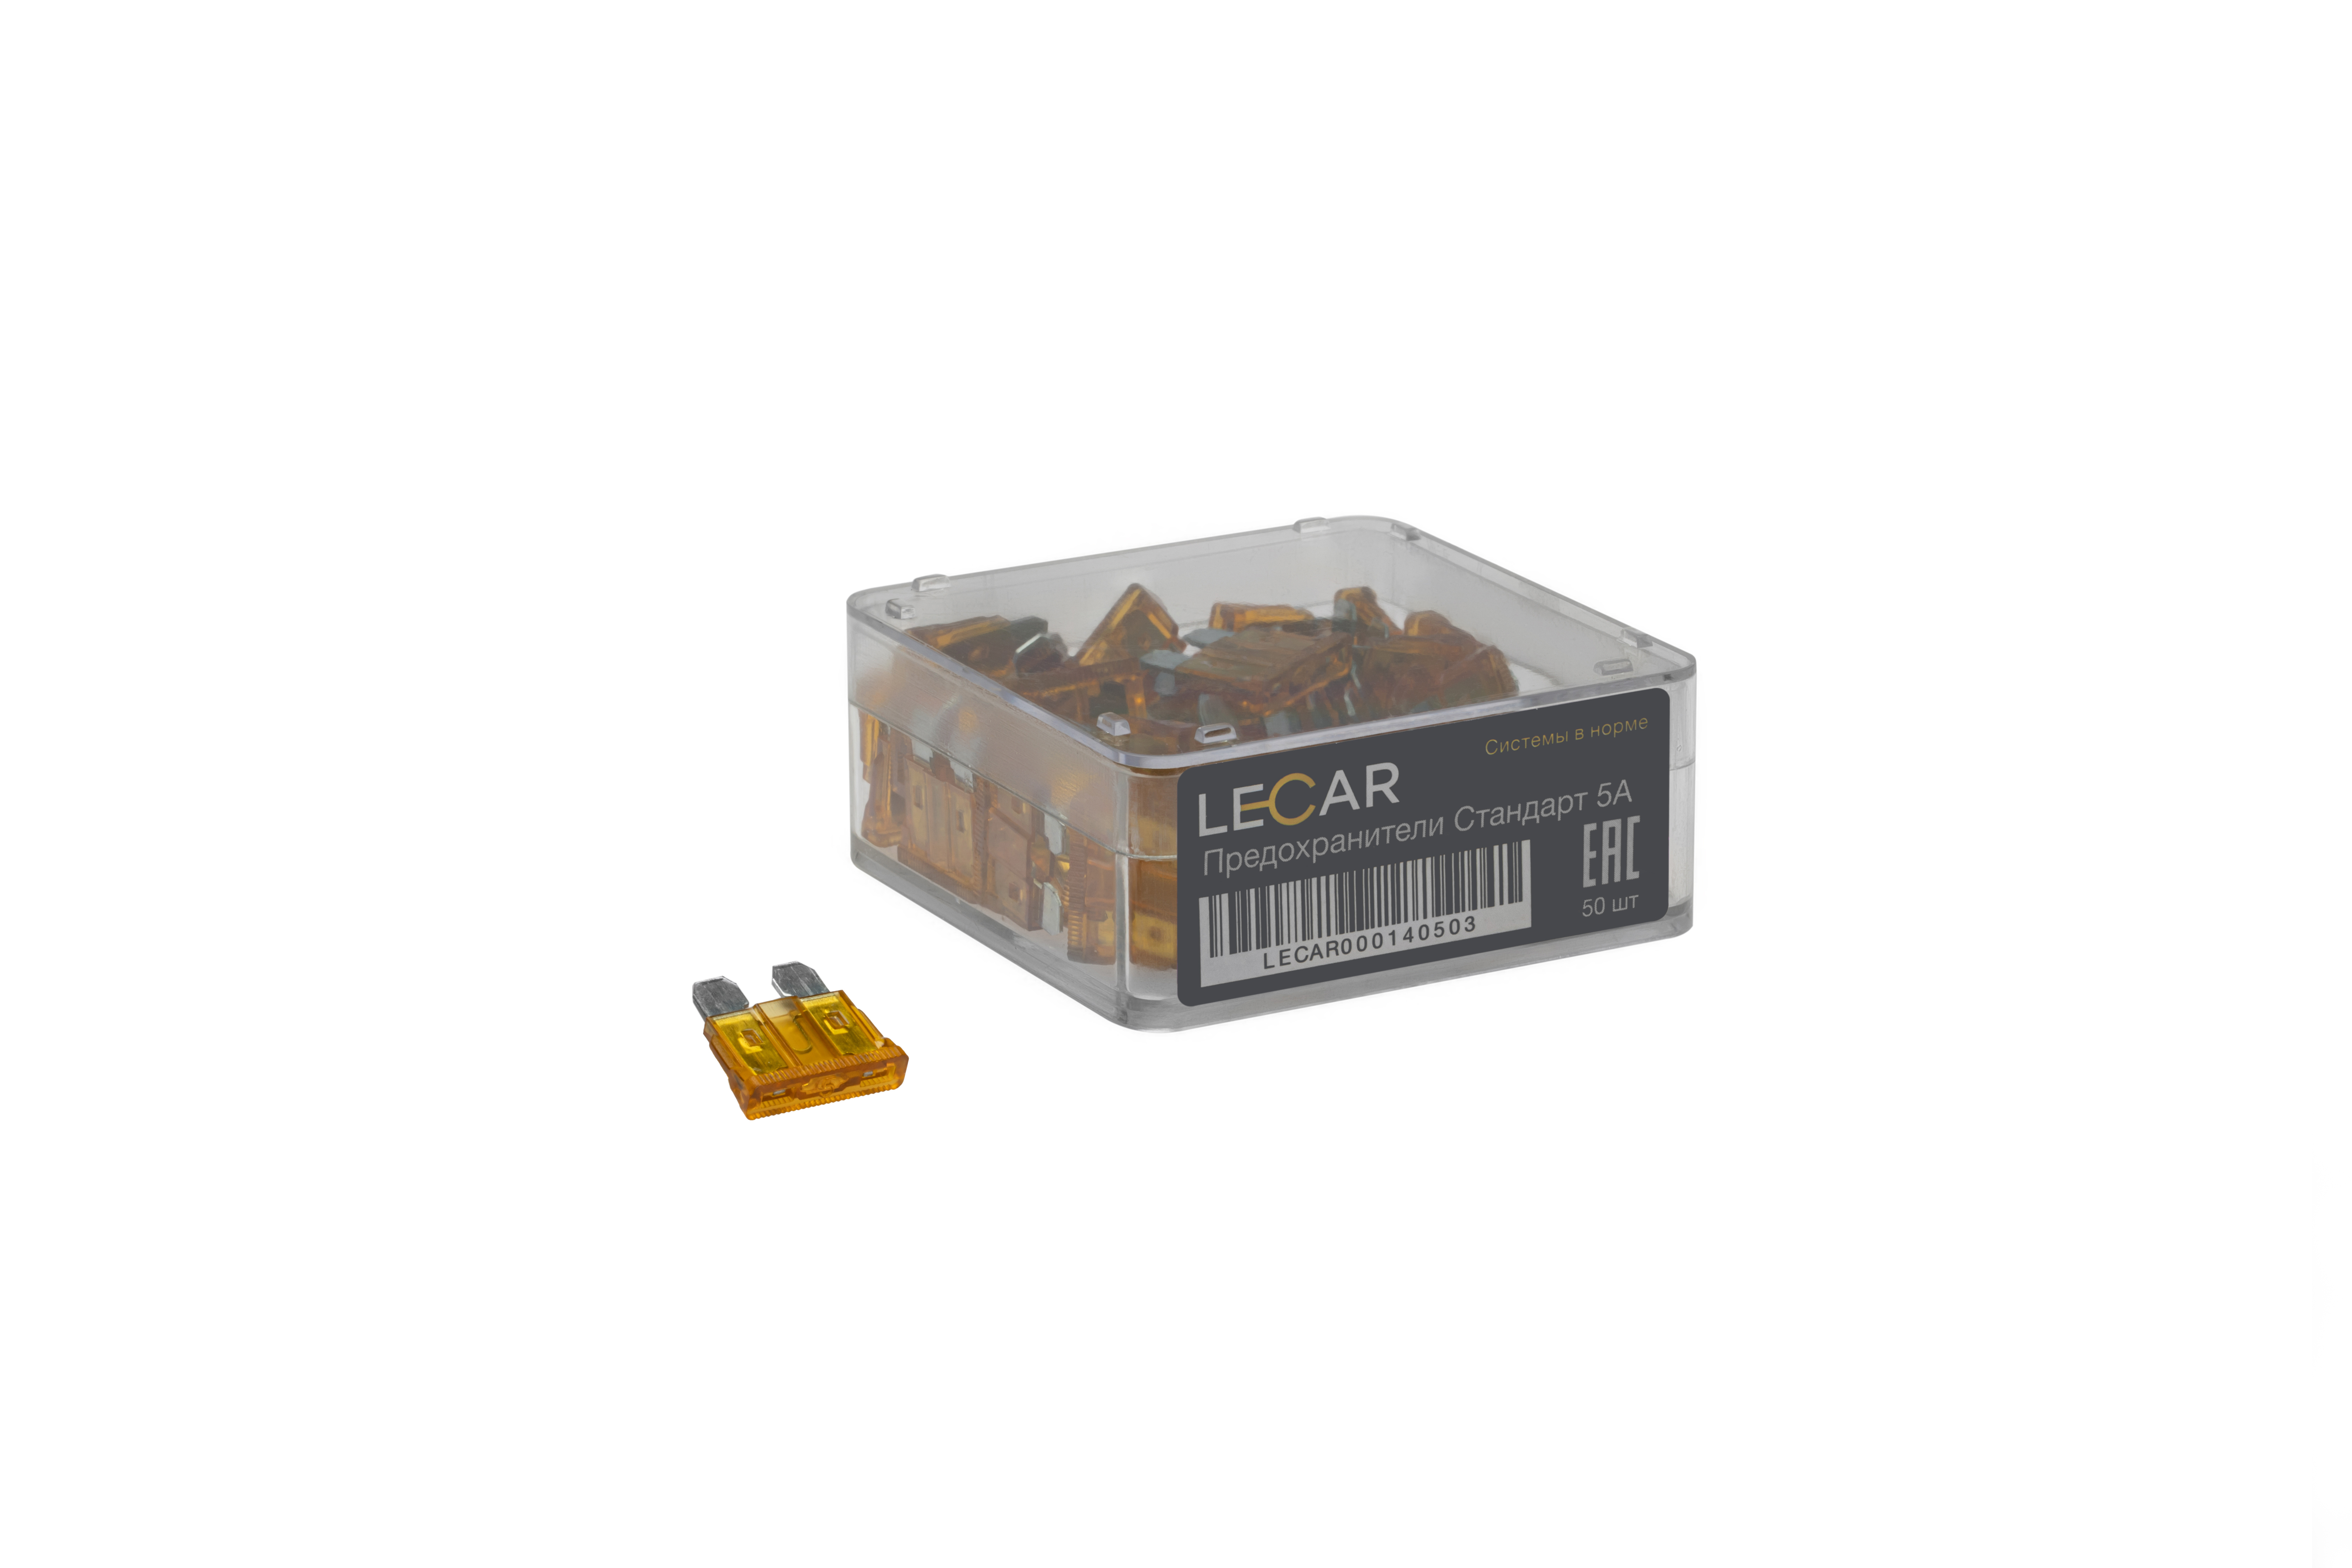 Предохранители 5А, 50 шт., (пластиковый бокс) Стандарт - LECAR LECAR000020503